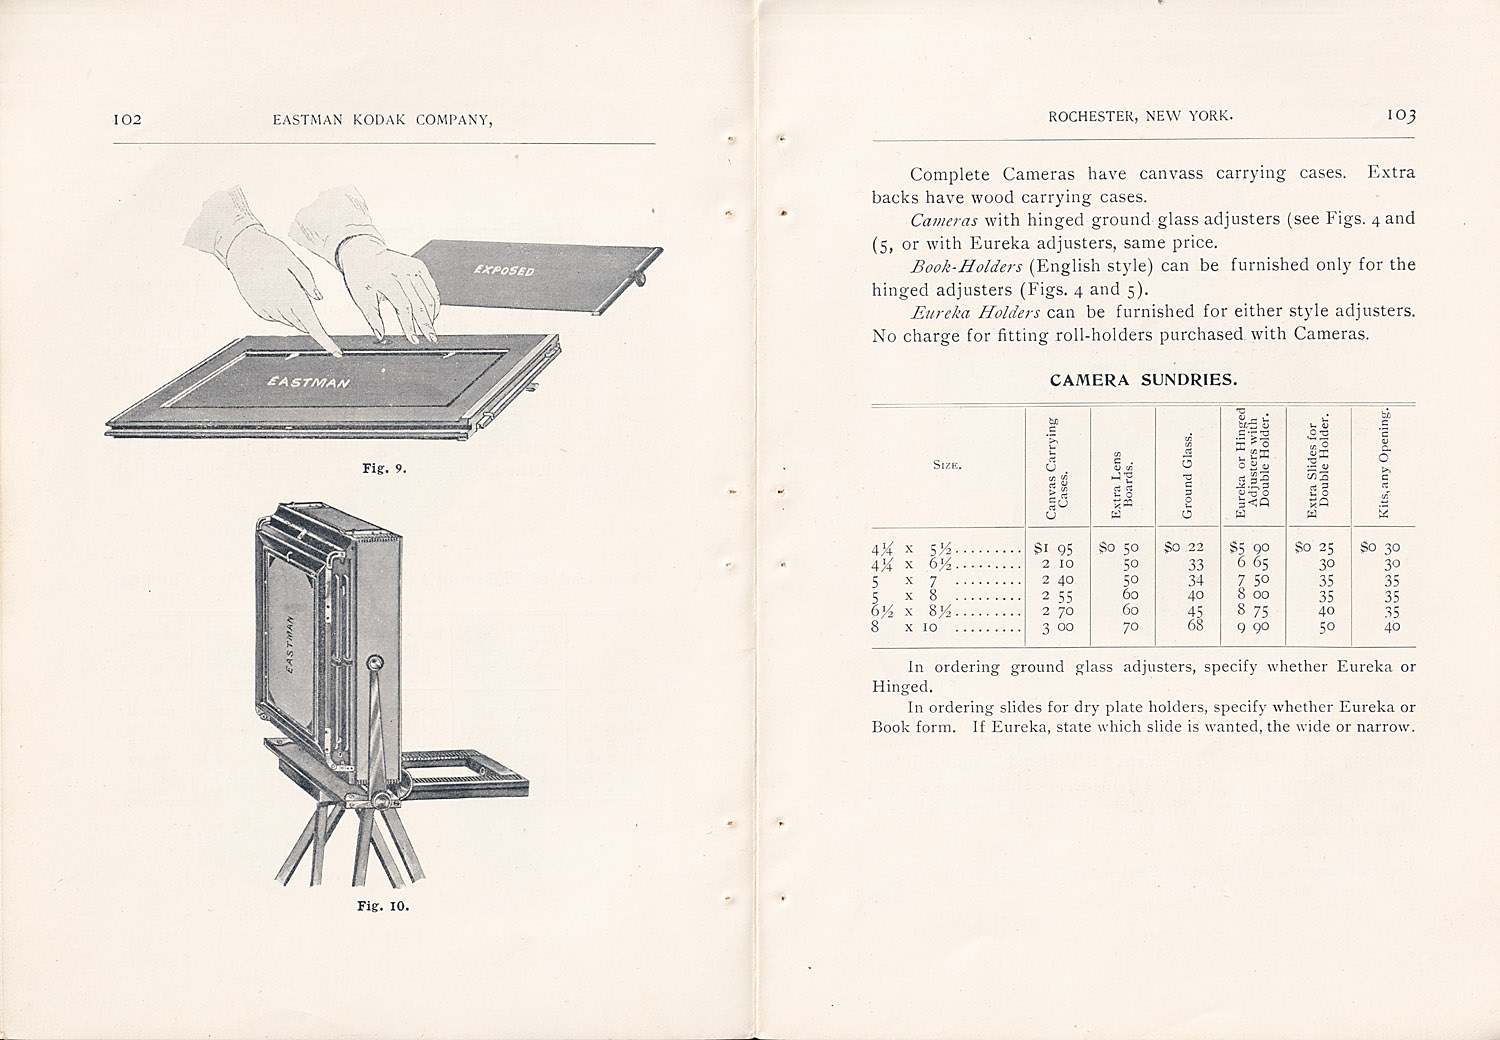 1370.ekc.kodak.products.1895-102-103-1500.jpg